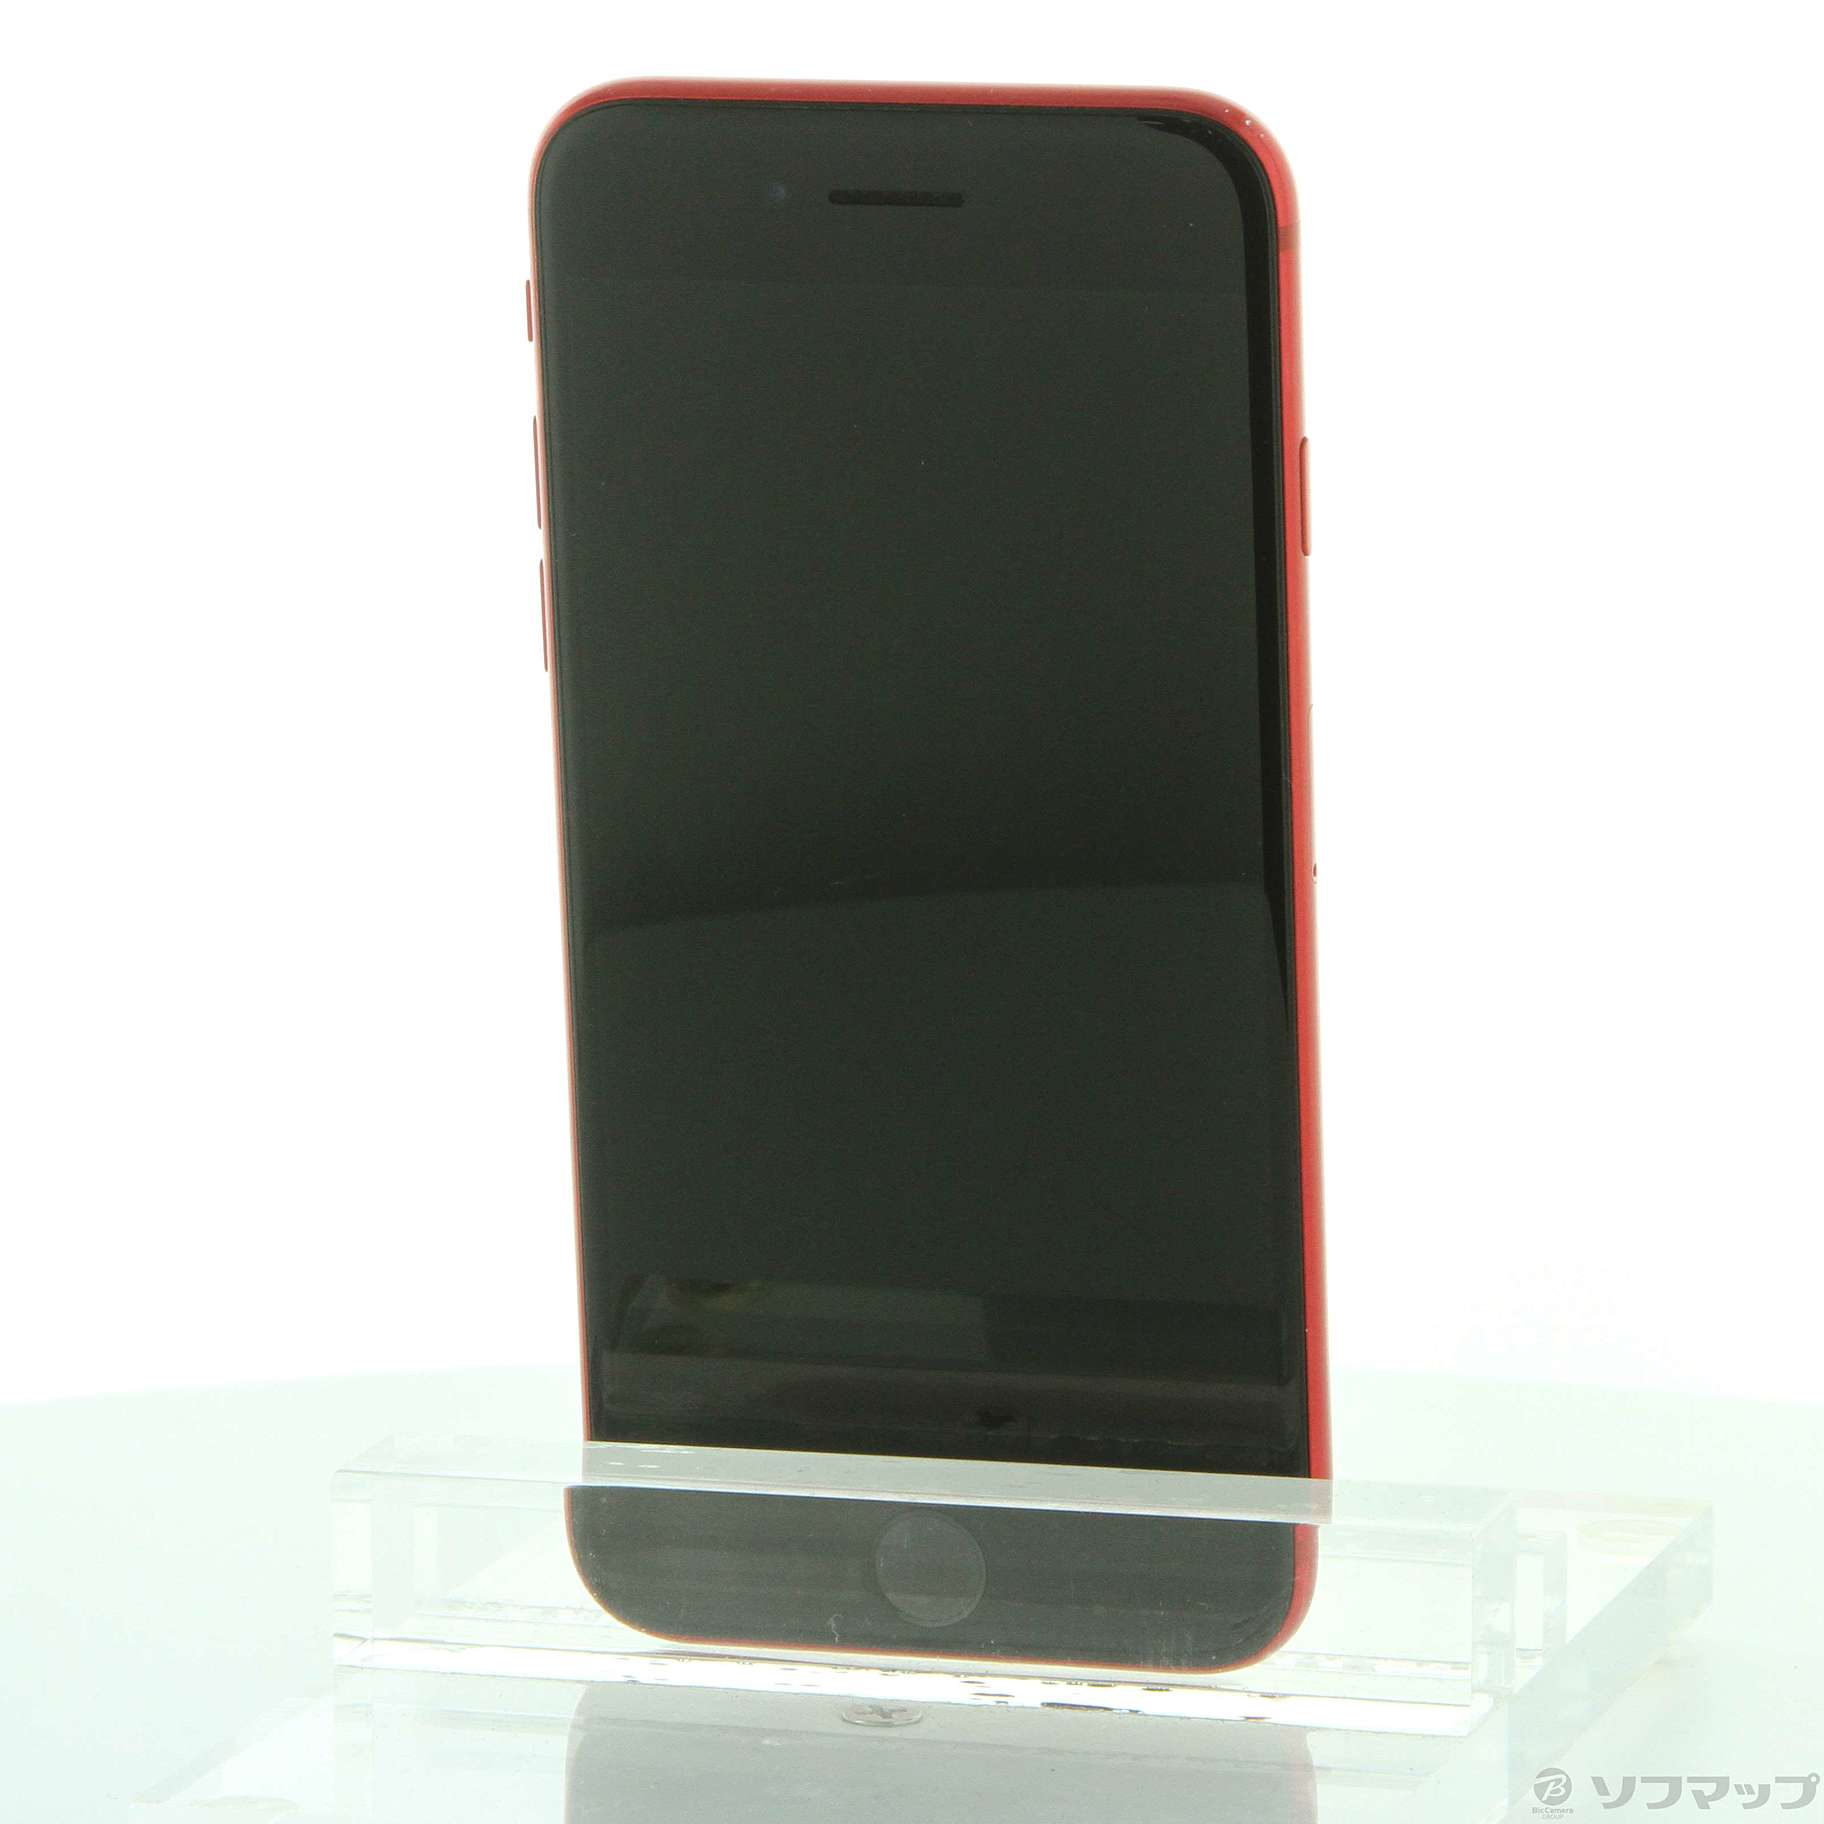 【超激得高品質】MXD22J/A iPhone SE(第2世代) 128GB レッド SIMフリー iPhone